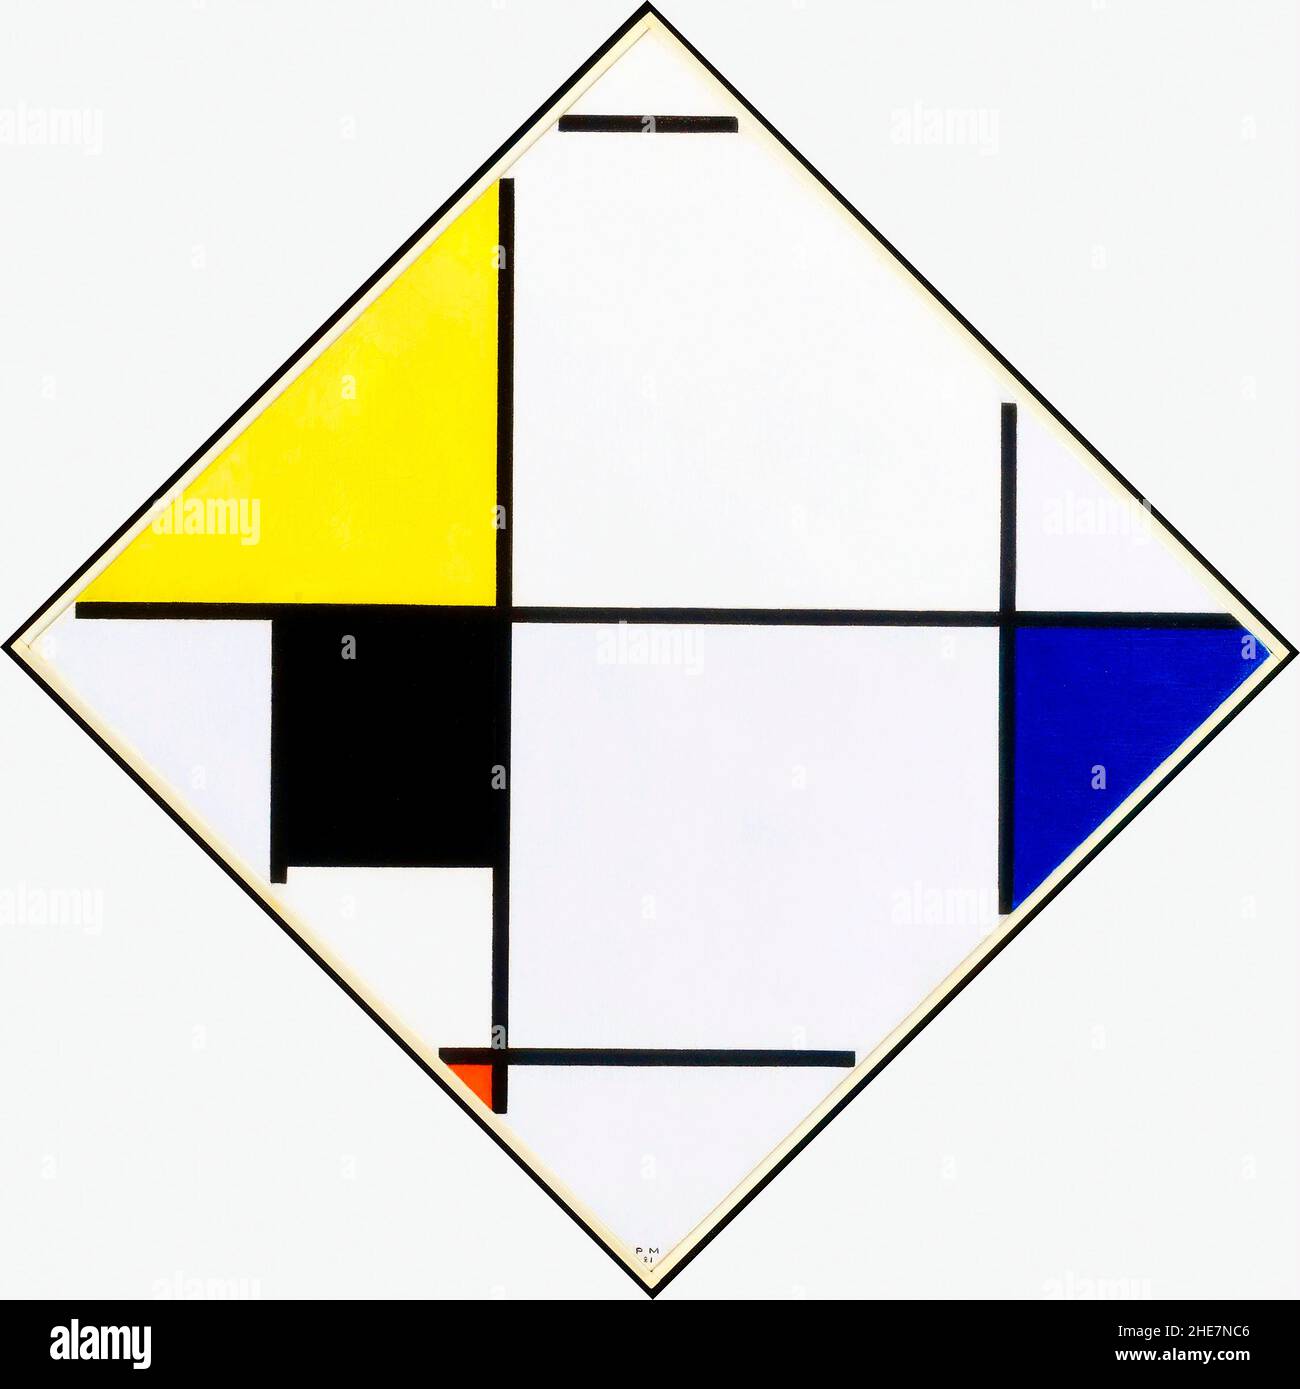 Rautenkomposition mit Gelb, Schwarz, Blau, Rot und Grau von Piet Mondrian (Mondriaan) (1872-1944), 1921 Stockfoto